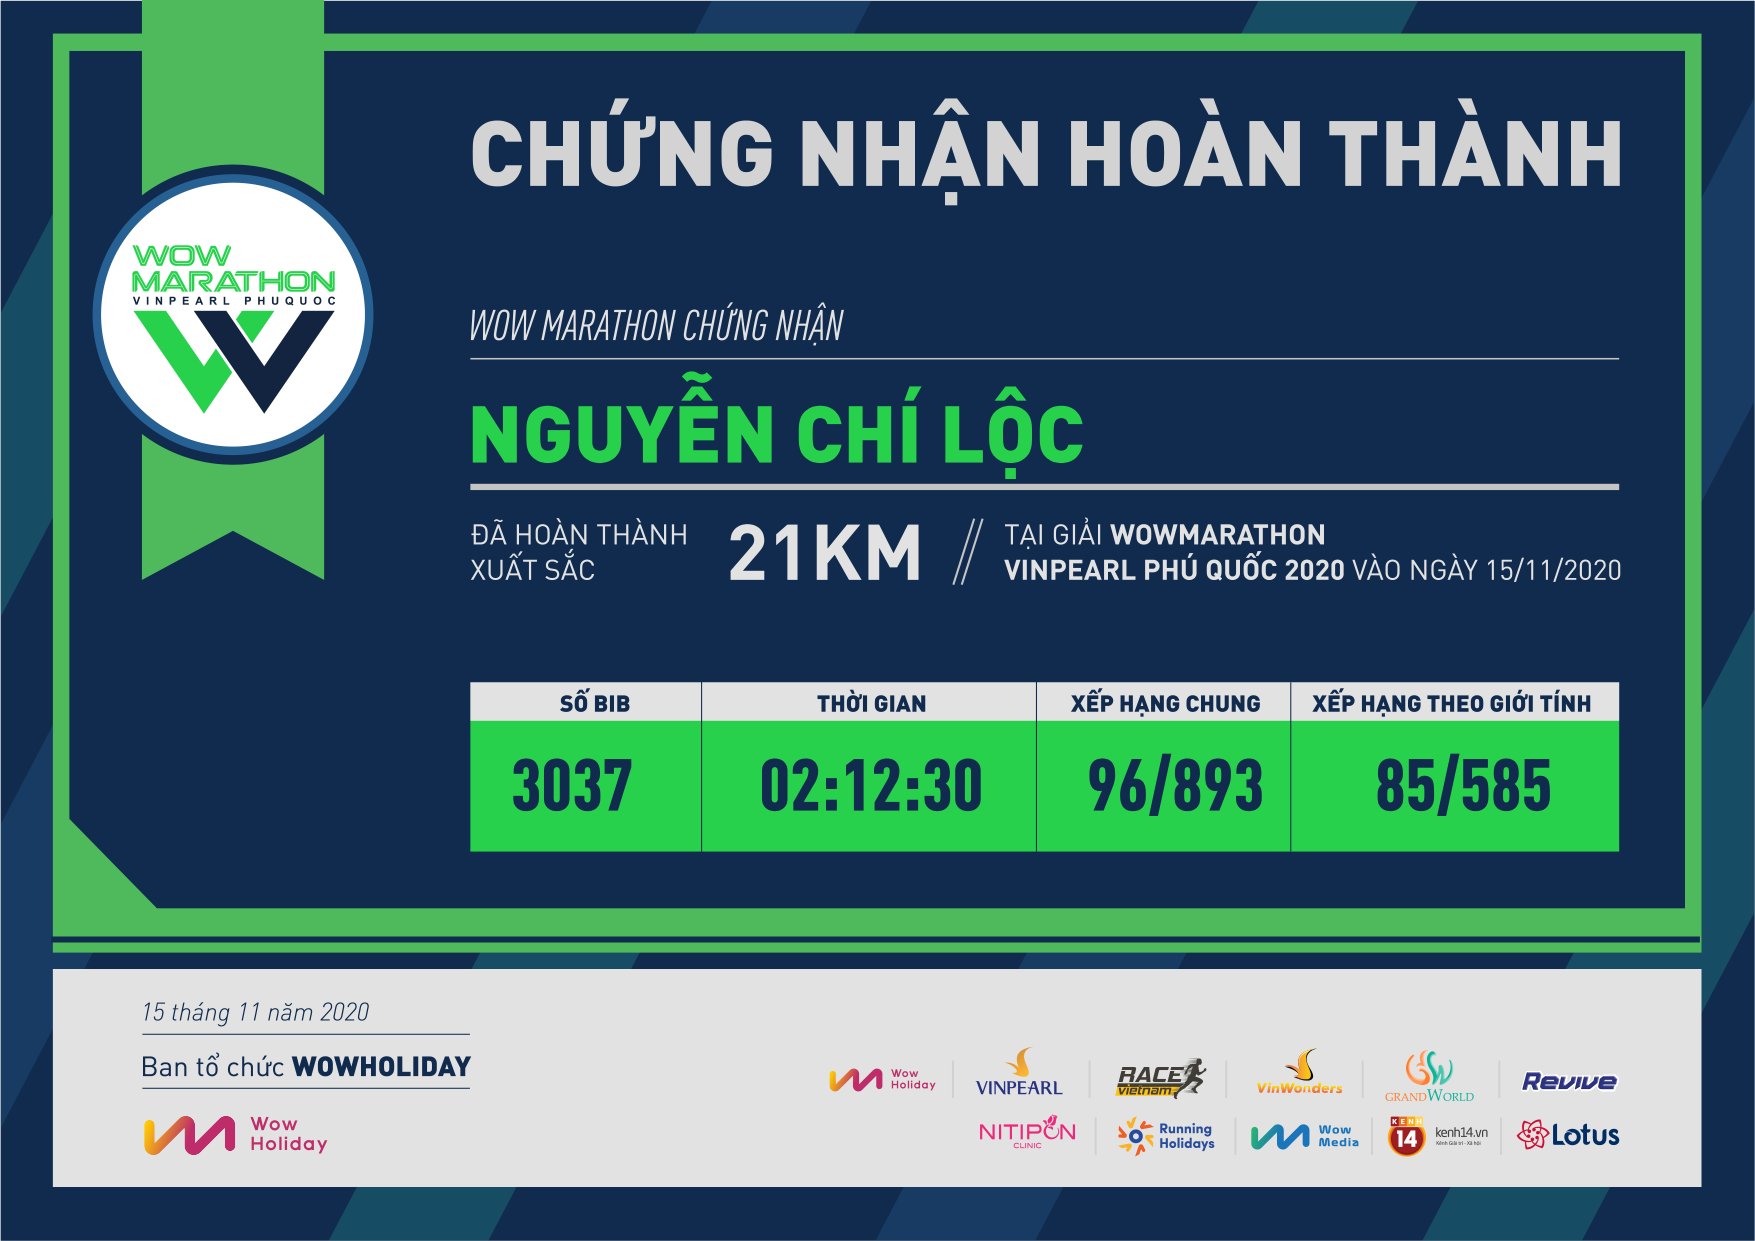 3037 - Nguyễn Chí Lộc